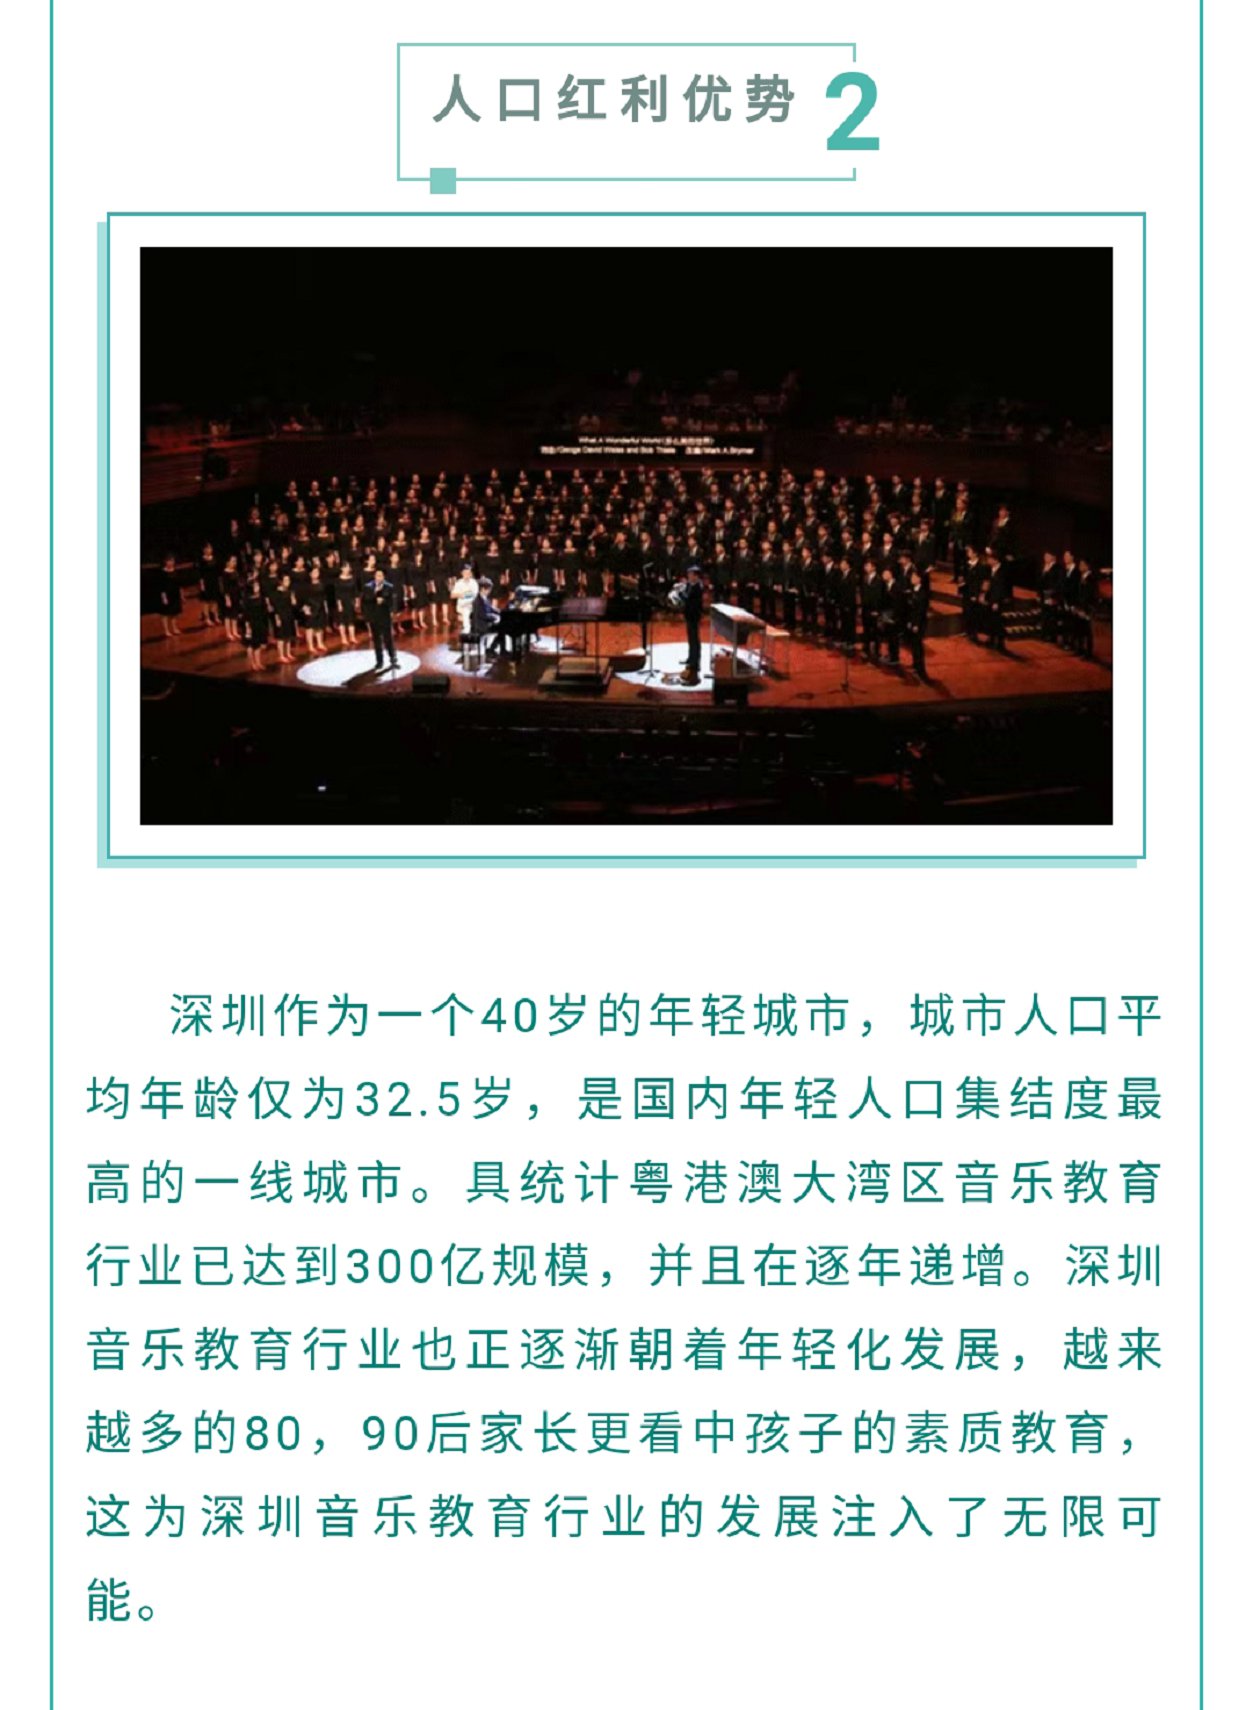 钢琴之城 ‖ 关于深圳，你想了解的都在这里！